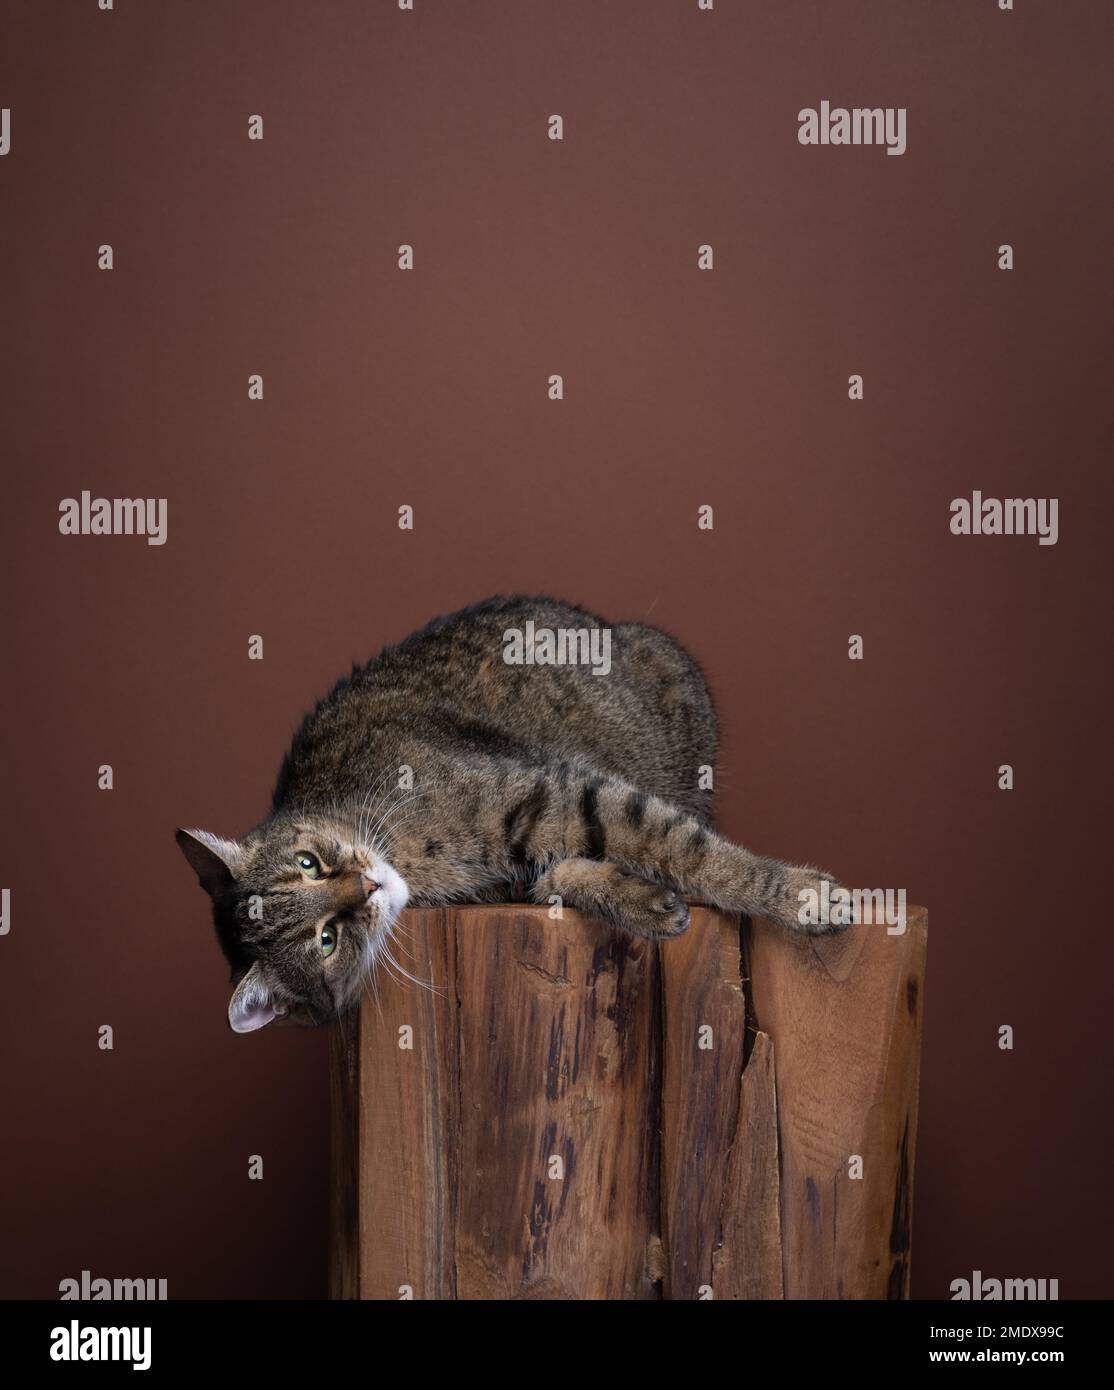 Gatto Tabby adagiato lateralmente su un log di legno in un ambiente di studio tono su tono. Lo sfondo è di colore marrone. Il gatto sembra rilassato e soddisfatto Foto Stock